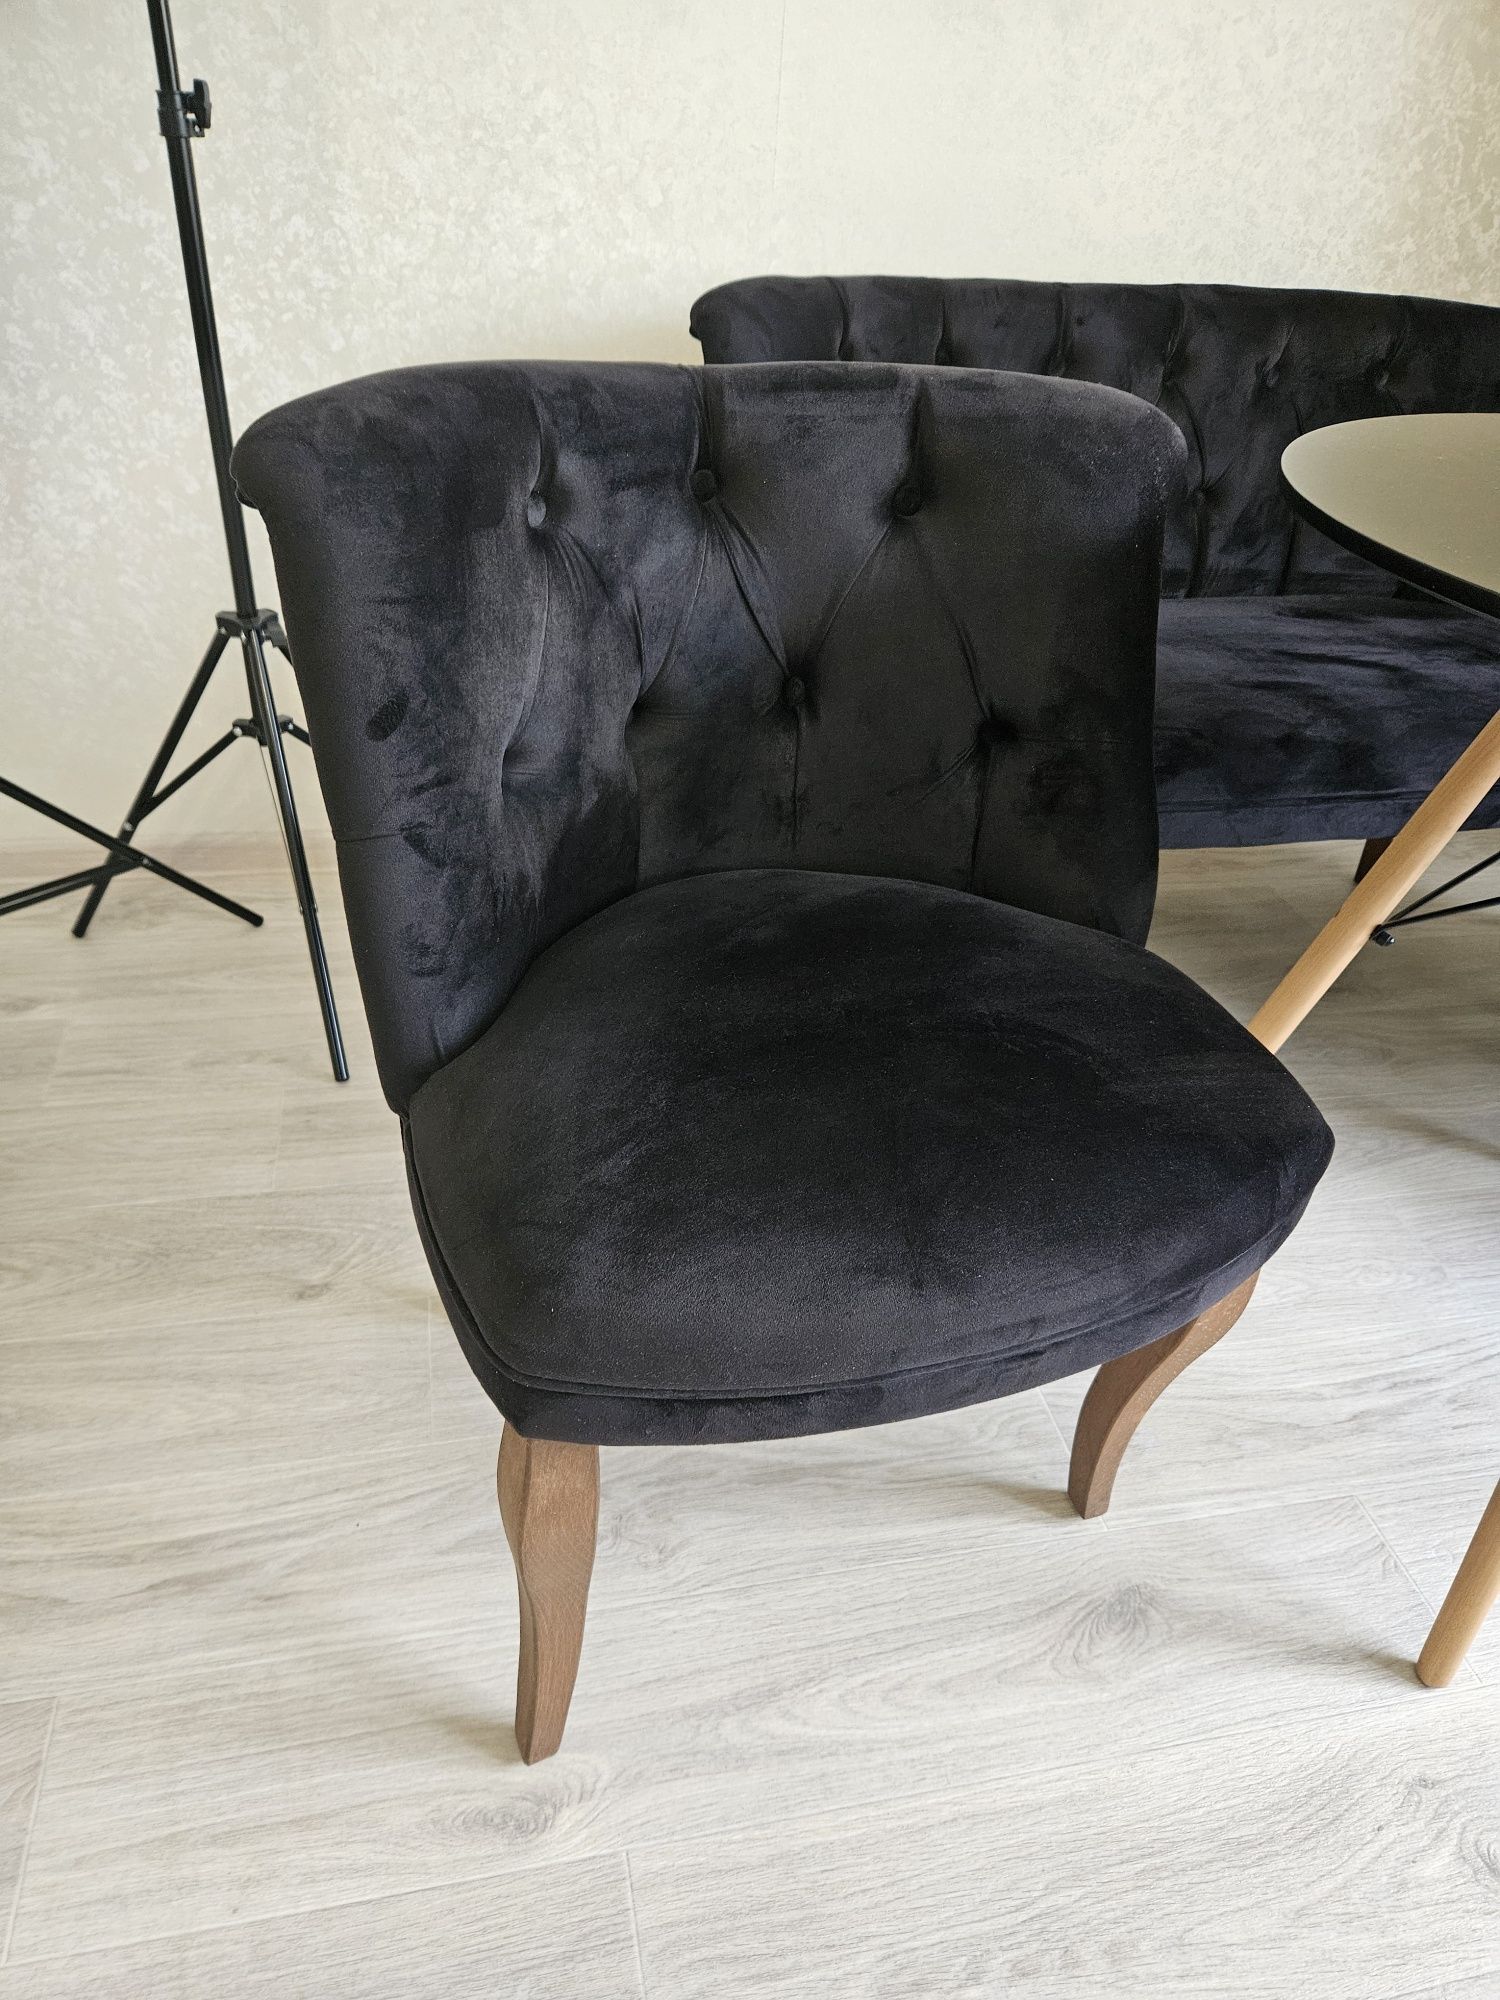 продам мягкий диванчик (софа) с креслами чёрного цвета, со столом.